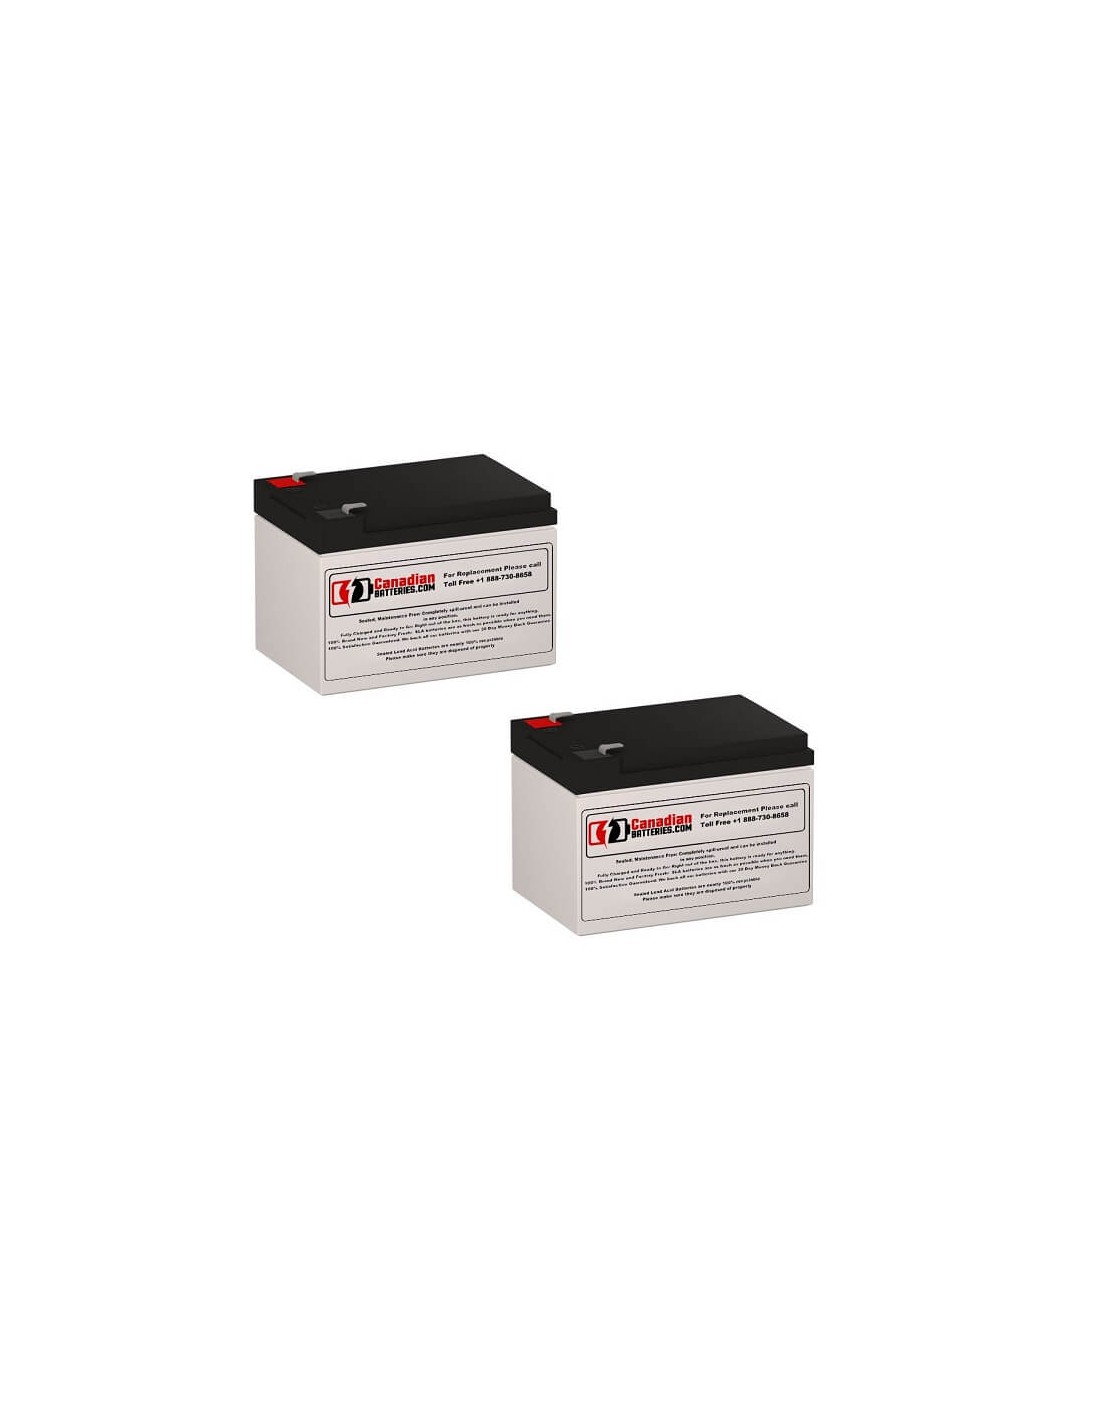 Batteries for Belkin Prof6c100 UPS, 2 x 12V, 12Ah - 144Wh